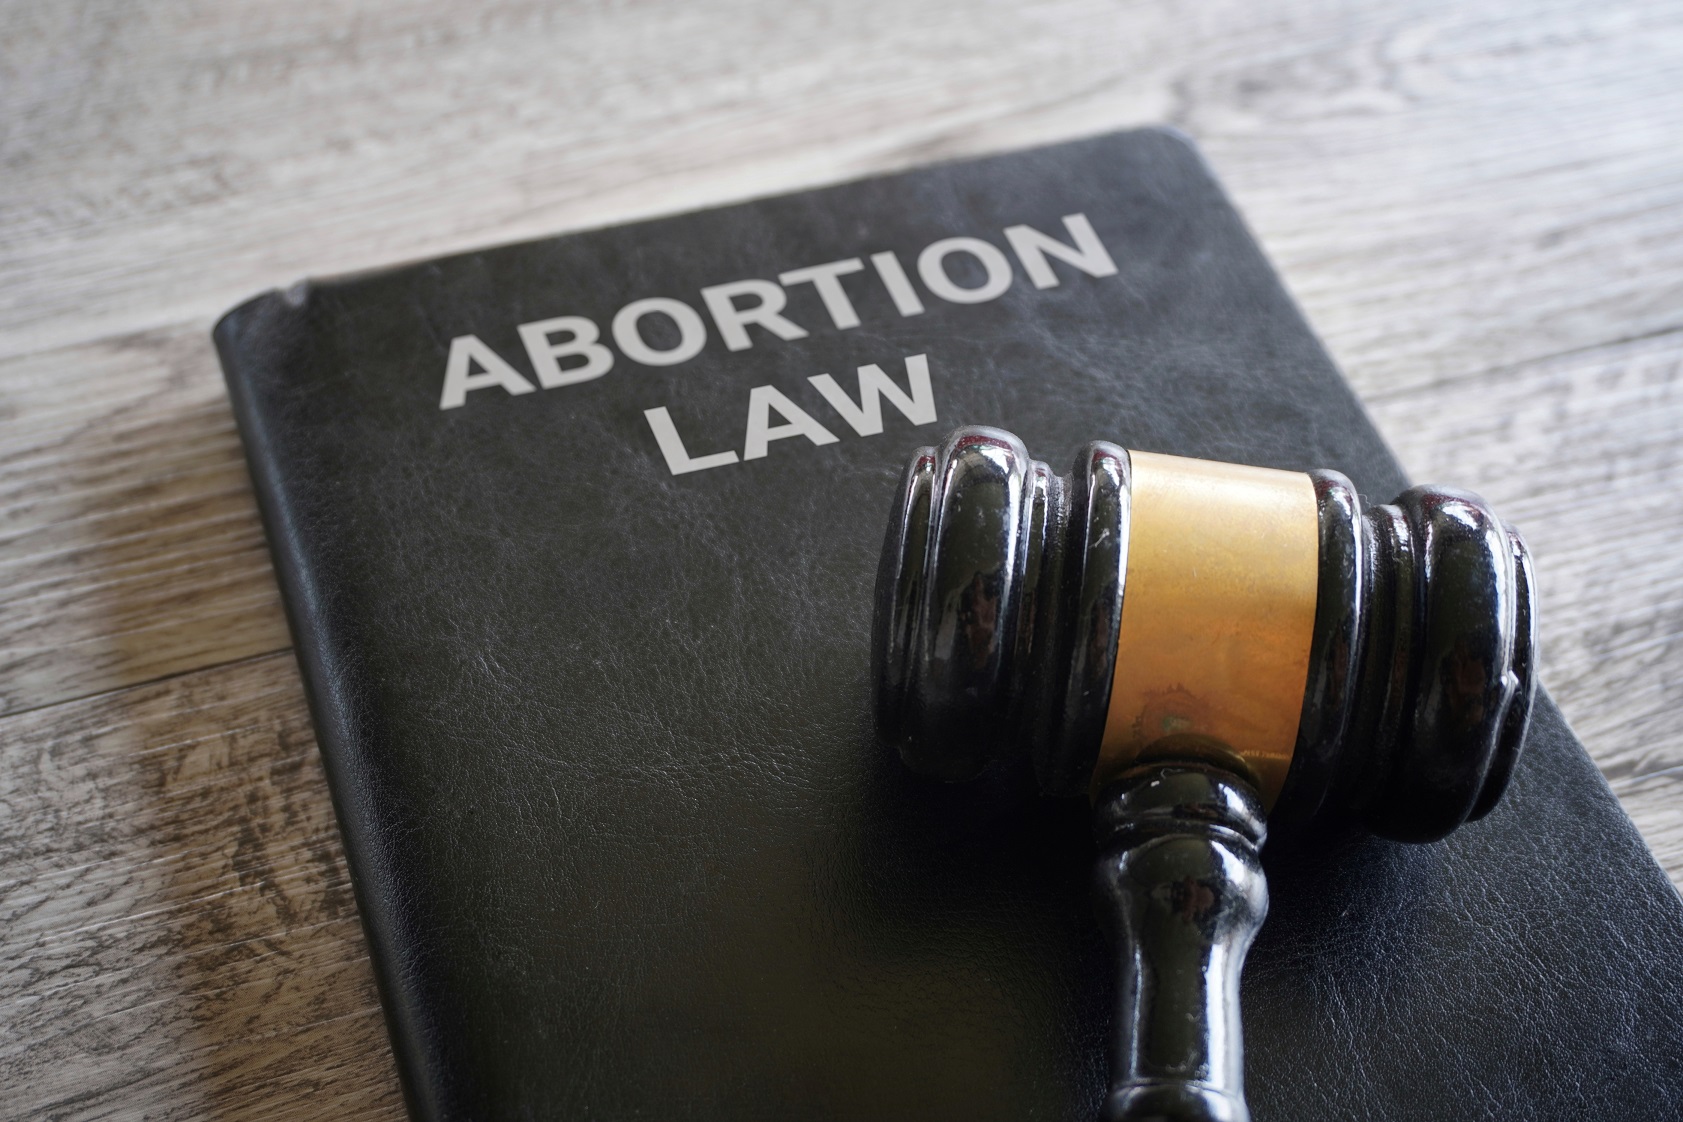 Czego dotyczą projekty zmian w prawie aborcyjnym?